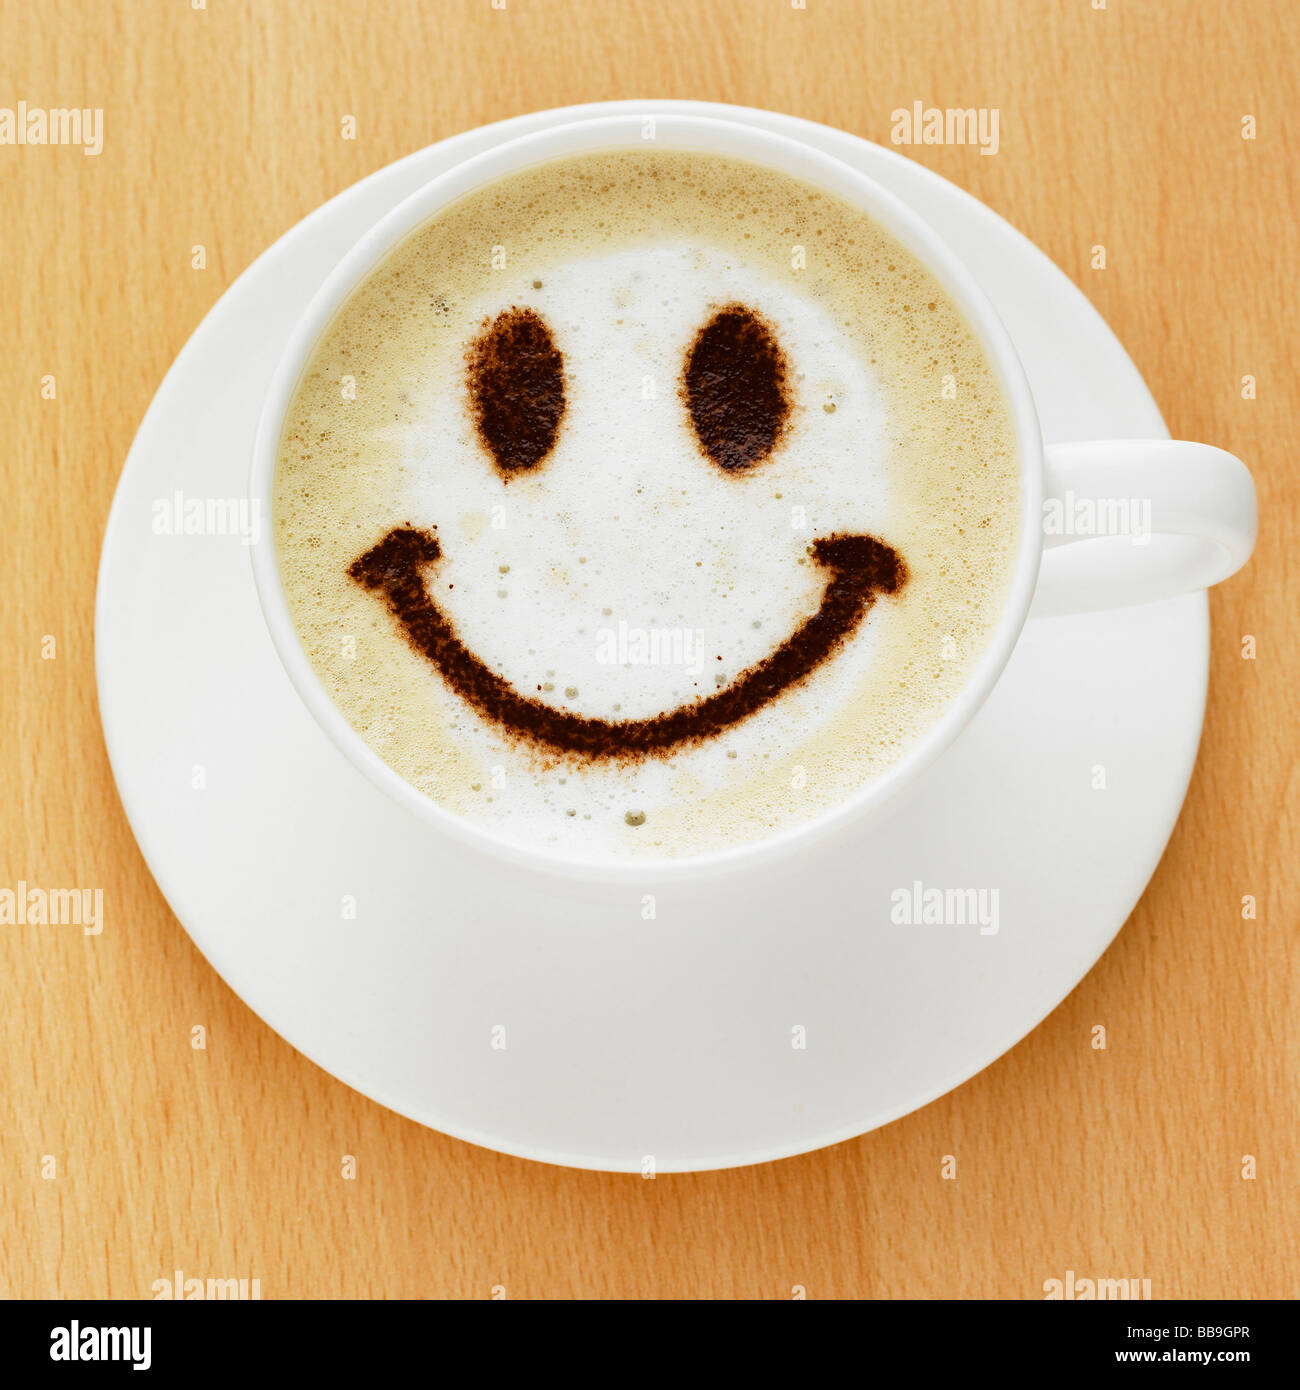 Une tasse de café cappuccino style avec un smiley sur le dessus dans le chocolat en poudre, tourné sur un dessus de table. Banque D'Images